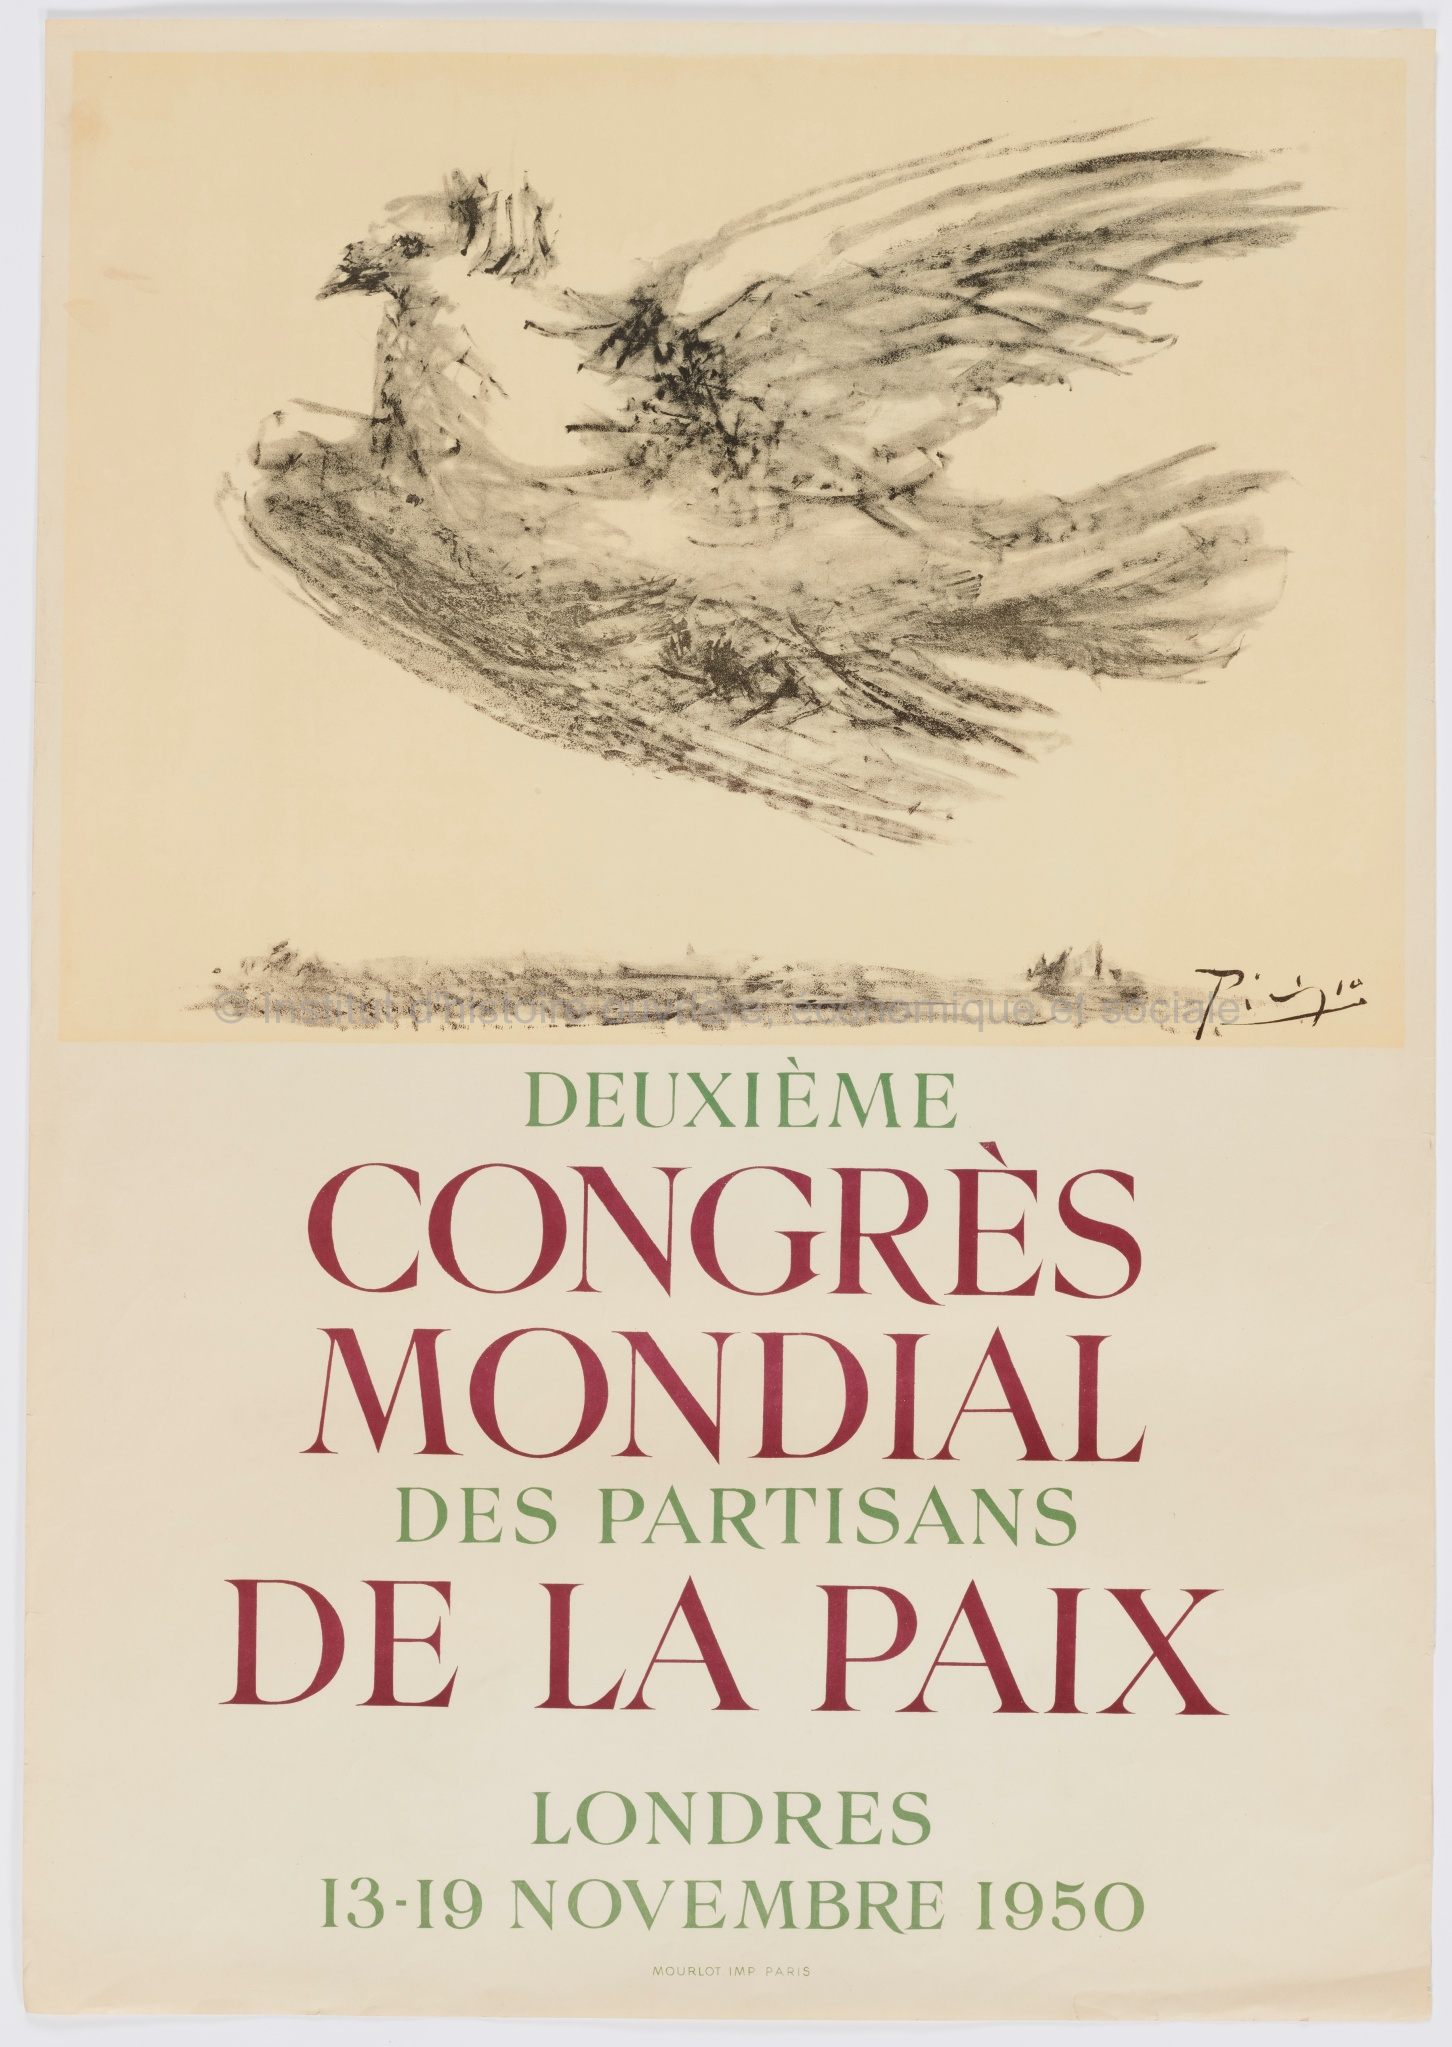 Deuxième congrès mondial des partisans de la paix : Londres, 13-19 novembre 1950